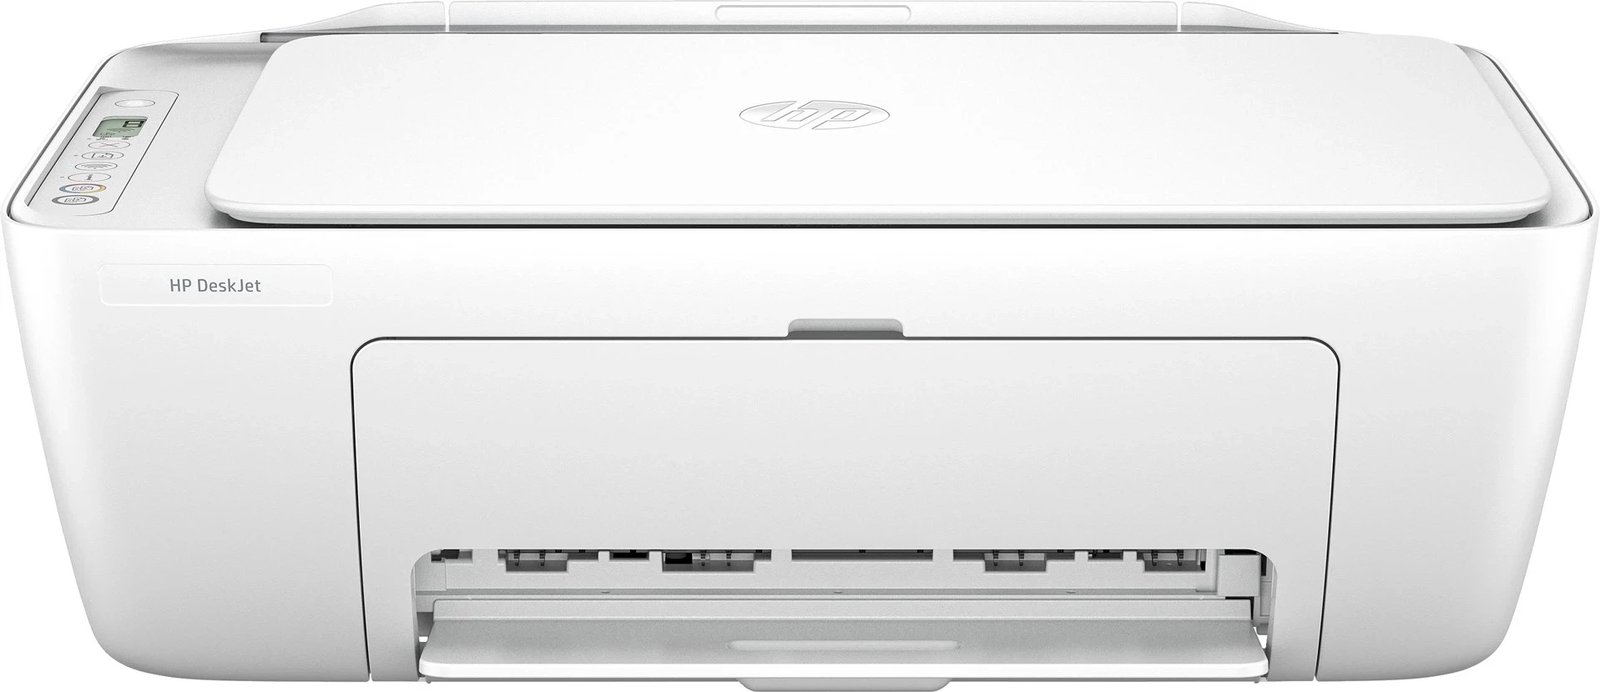 Printer AIO HP DeskJet 2810e, i bardhë